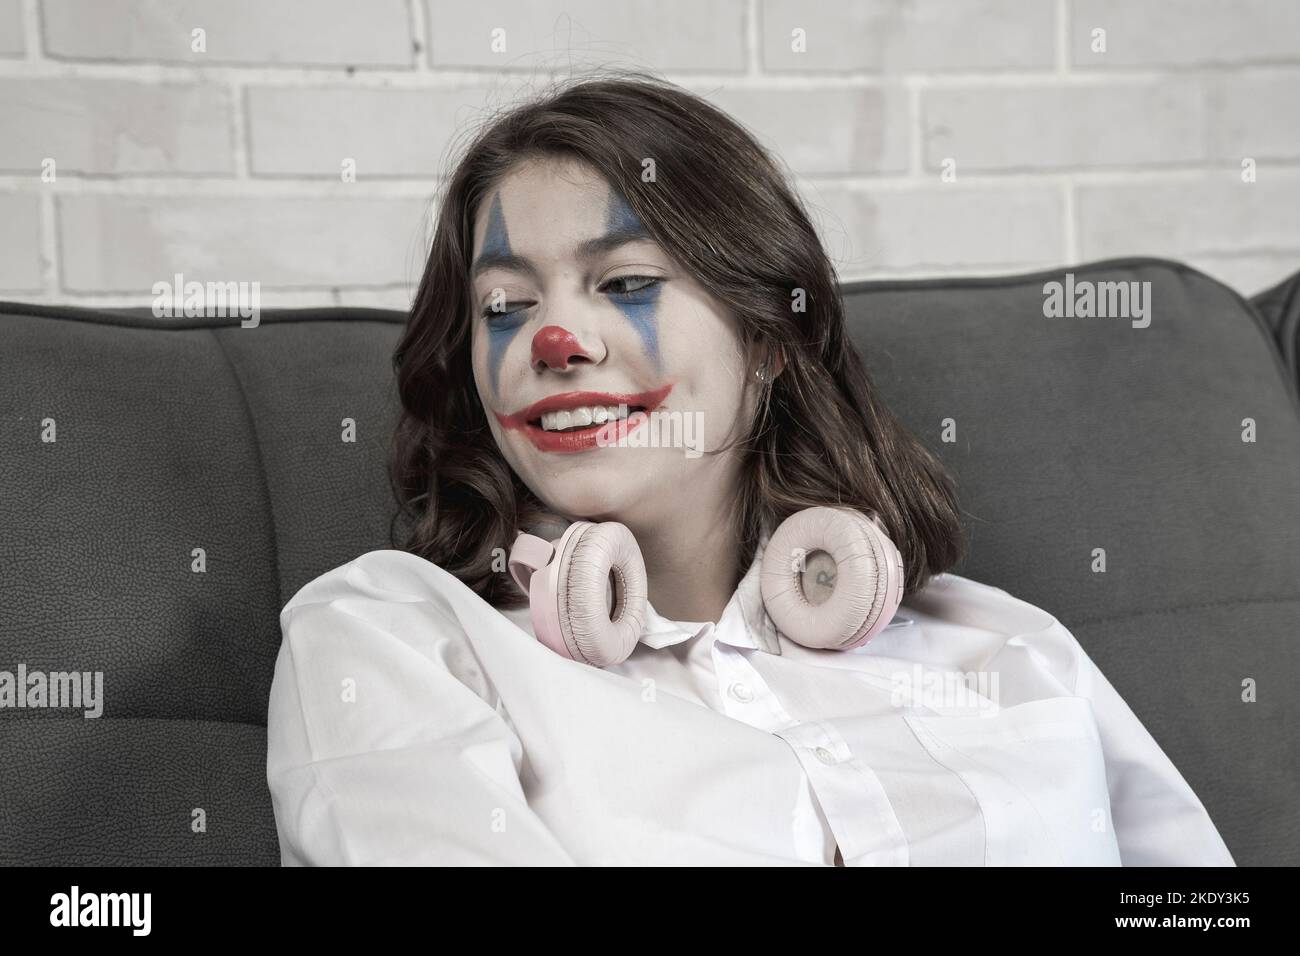 une adolescente avec le maquillage clown parle de quelque chose émotionnellement Banque D'Images